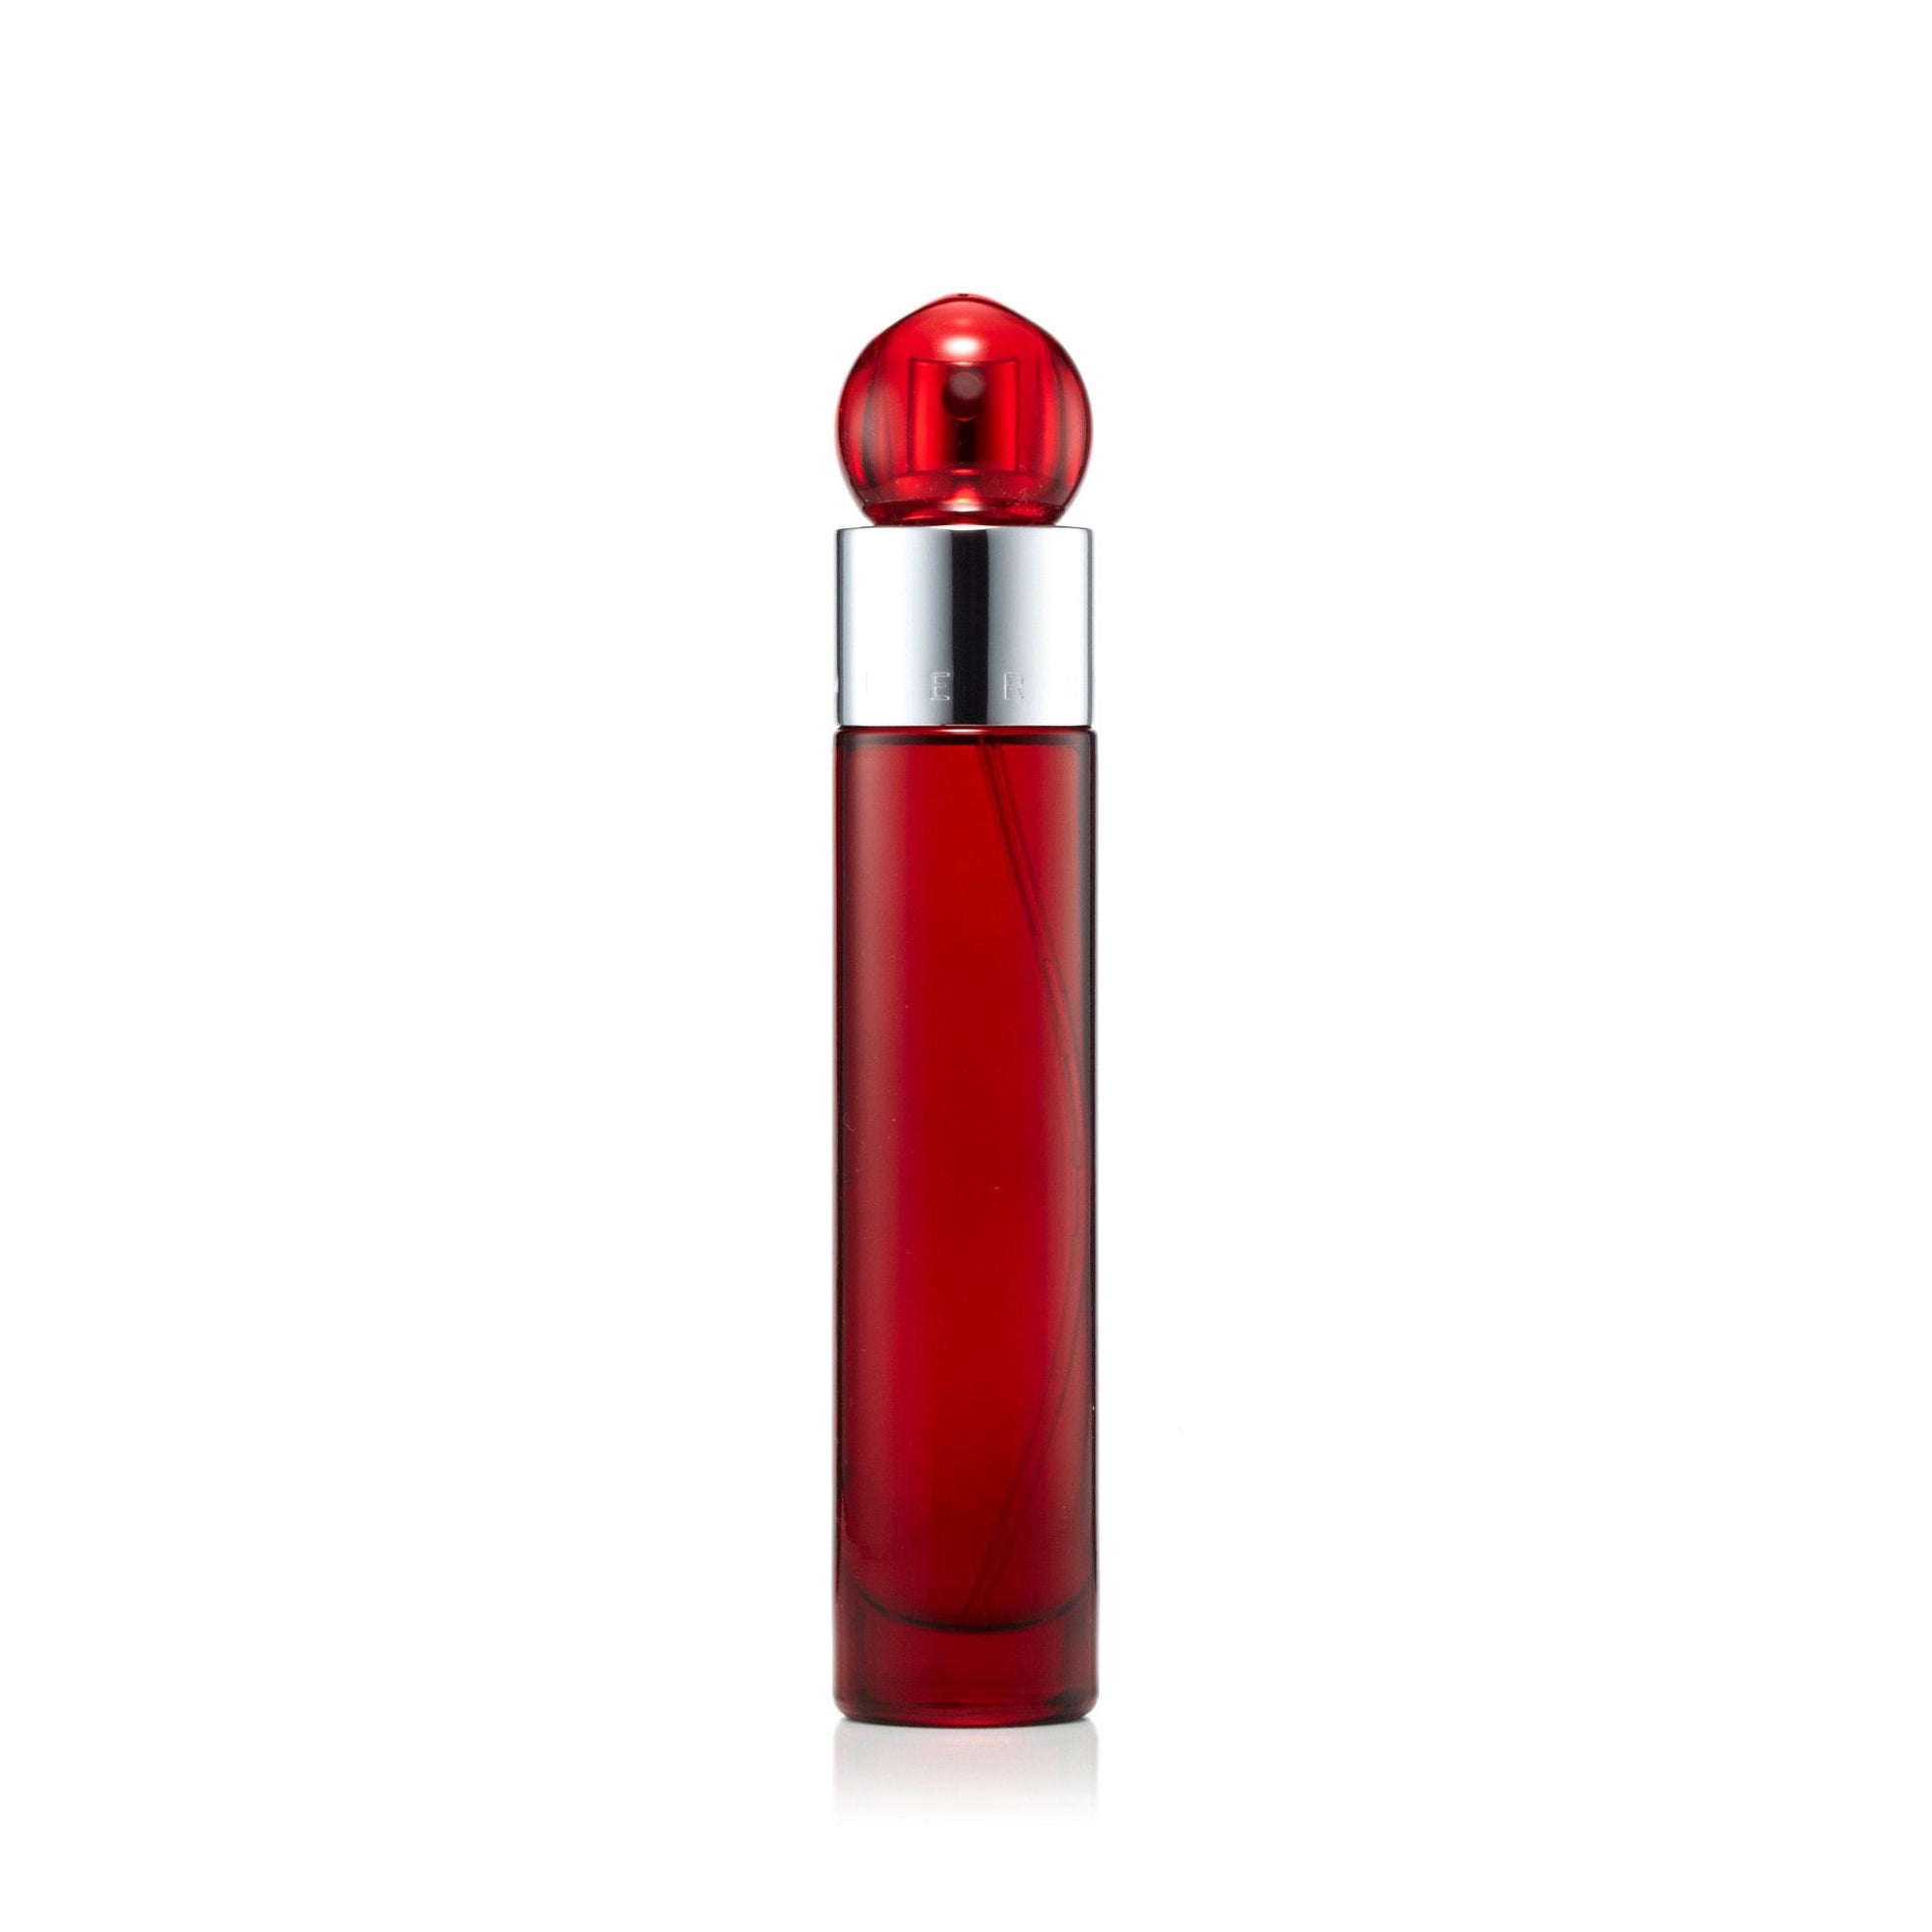 360° Red Eau de Toilette Spray for Men by Perry Ellis, Product image 5